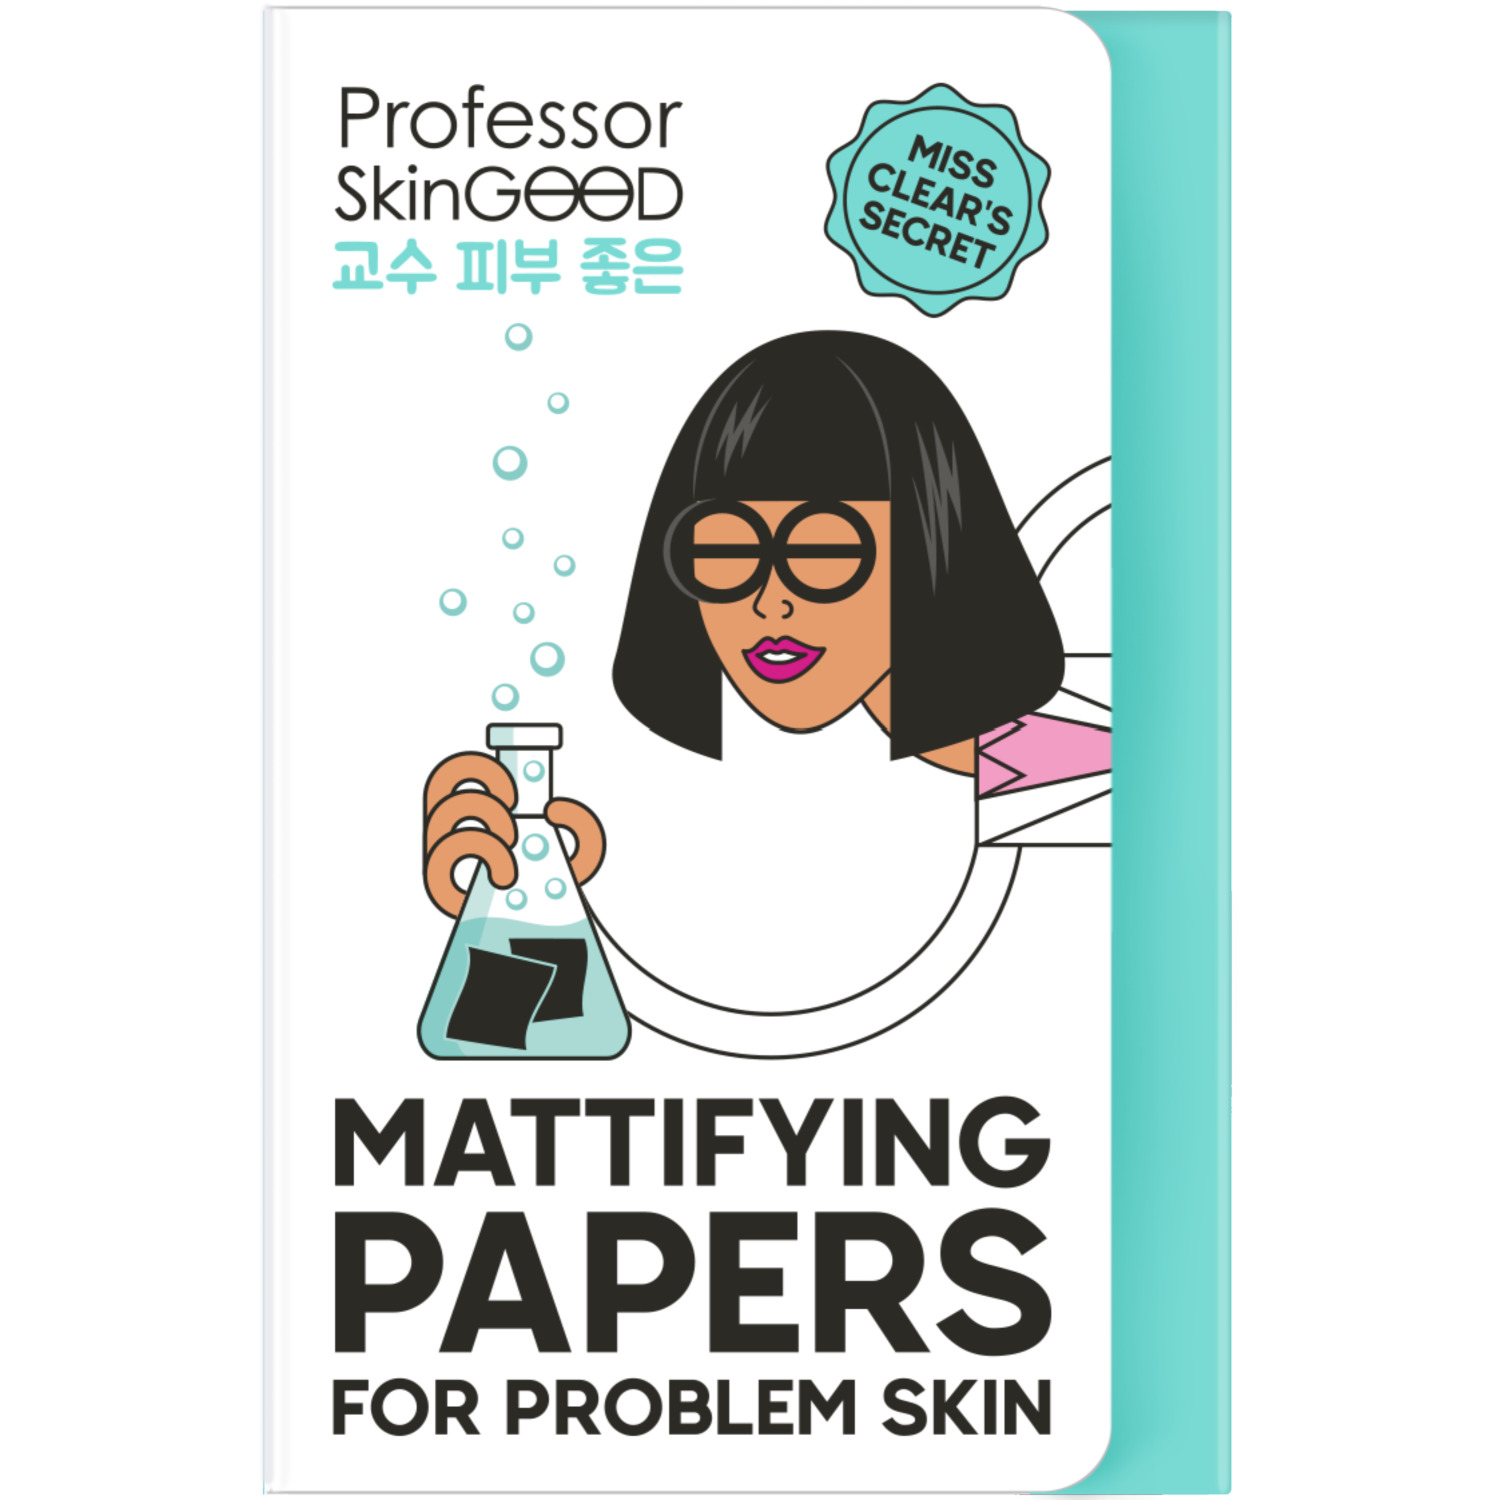 Салфетки Professor SkinGood Mattifying Papers матирующие для проблемной кожи 50 шт матирующие салфетки для лица